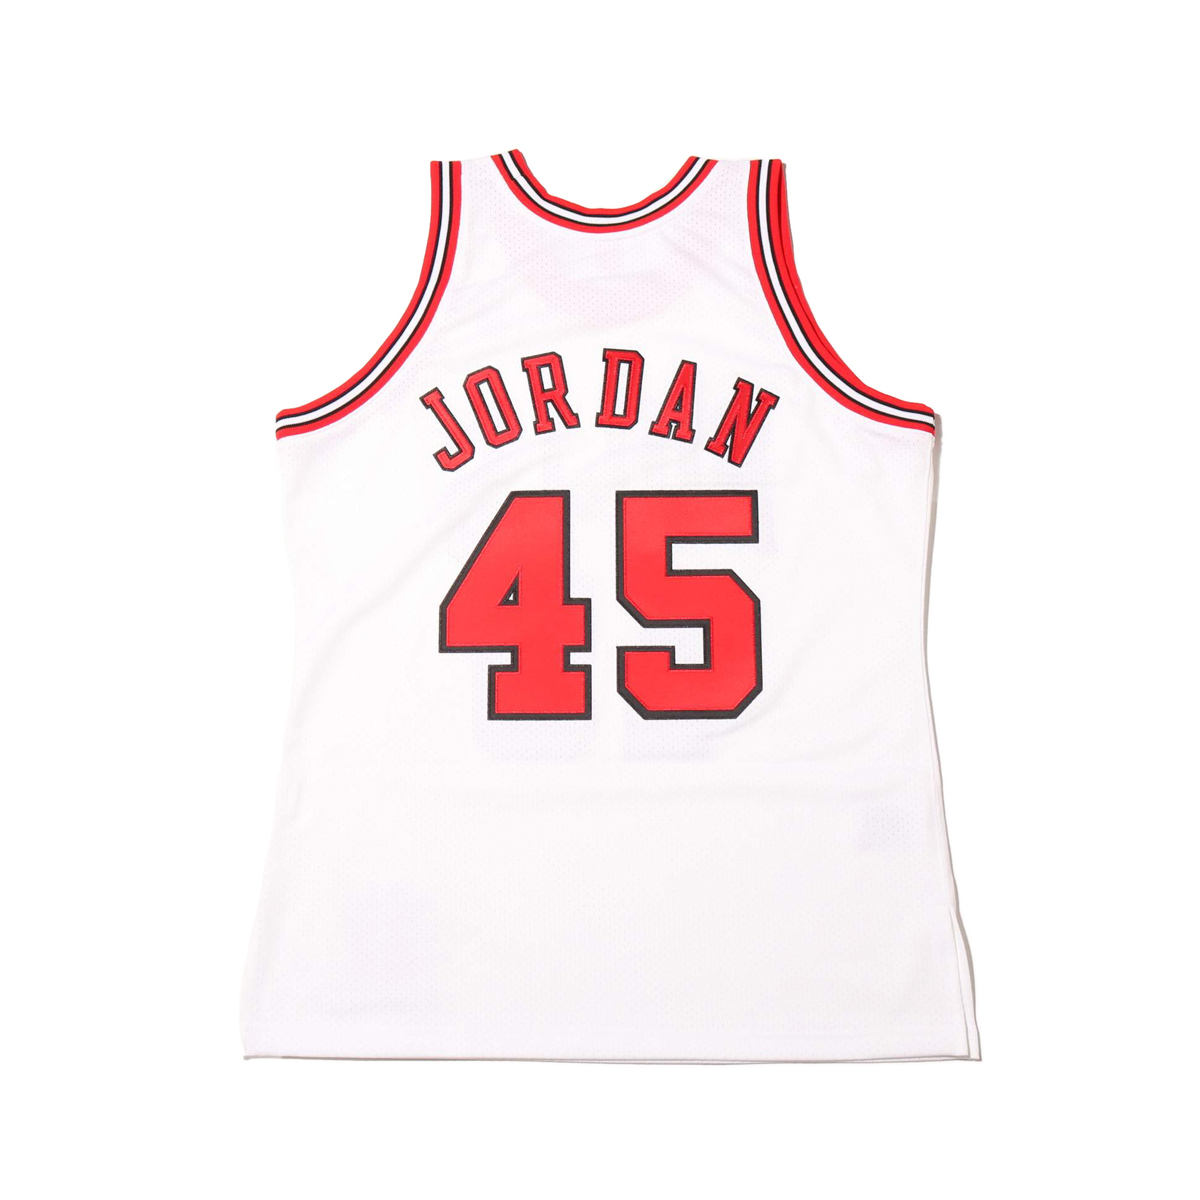 楽天市場 Mitchell Ness Authentic Jersey 23 Michael Jordan 94 95 Chicago Bulls White ミッチェルアンドネス オーセンティックジャージ 23 マイケルジョーダン シカゴ ブルズ メンズ バスケットボール ジャージ 19ho I Kinetics